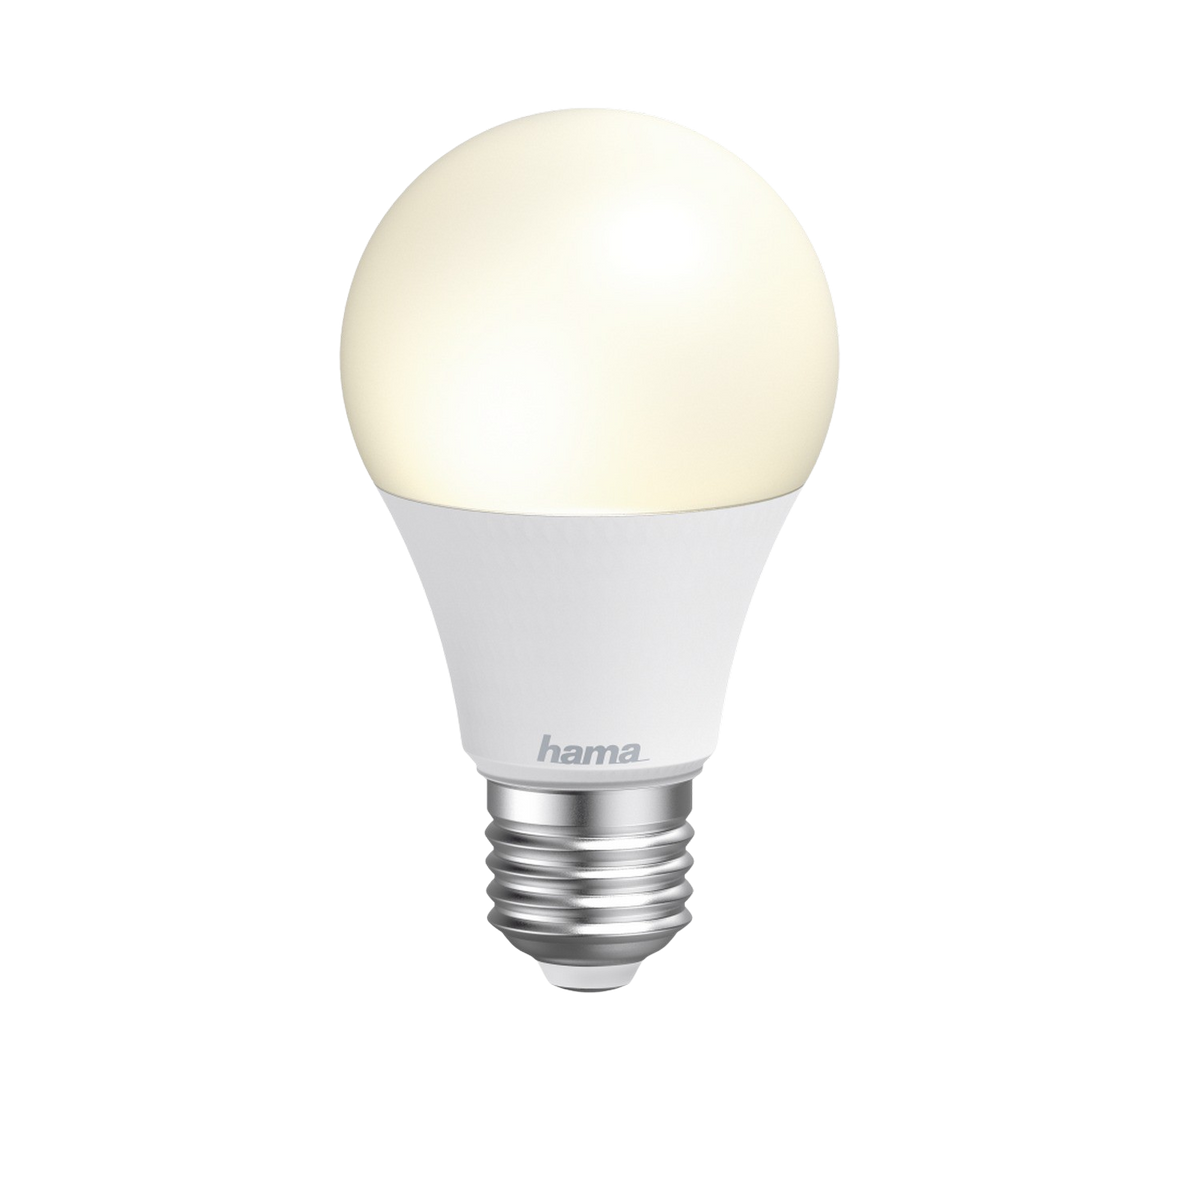 10W HAMA 176581 Lampe Multi-Colour RGBW WIFI-LED-LAMPE E27